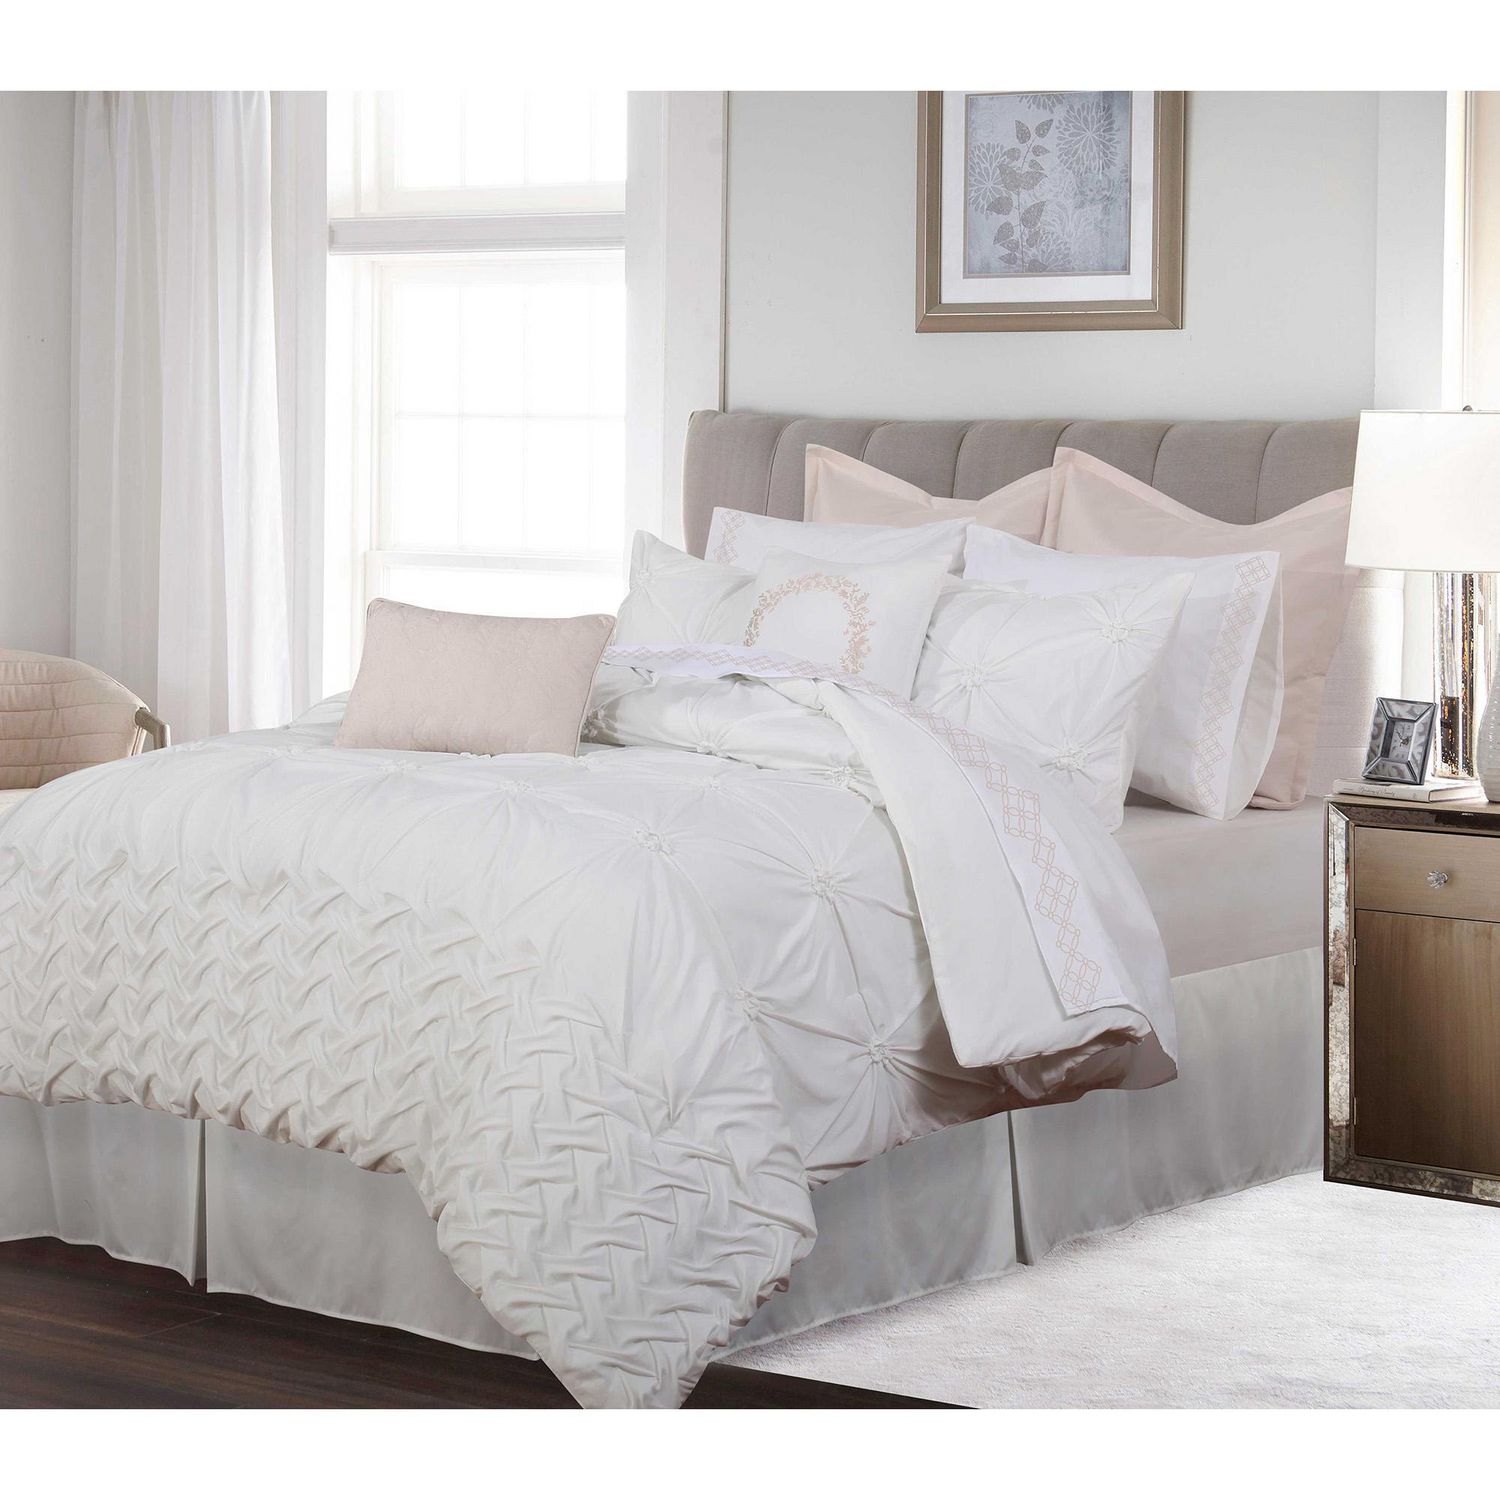 Mainstays Grey Reversible Comforter Twin, comforter 